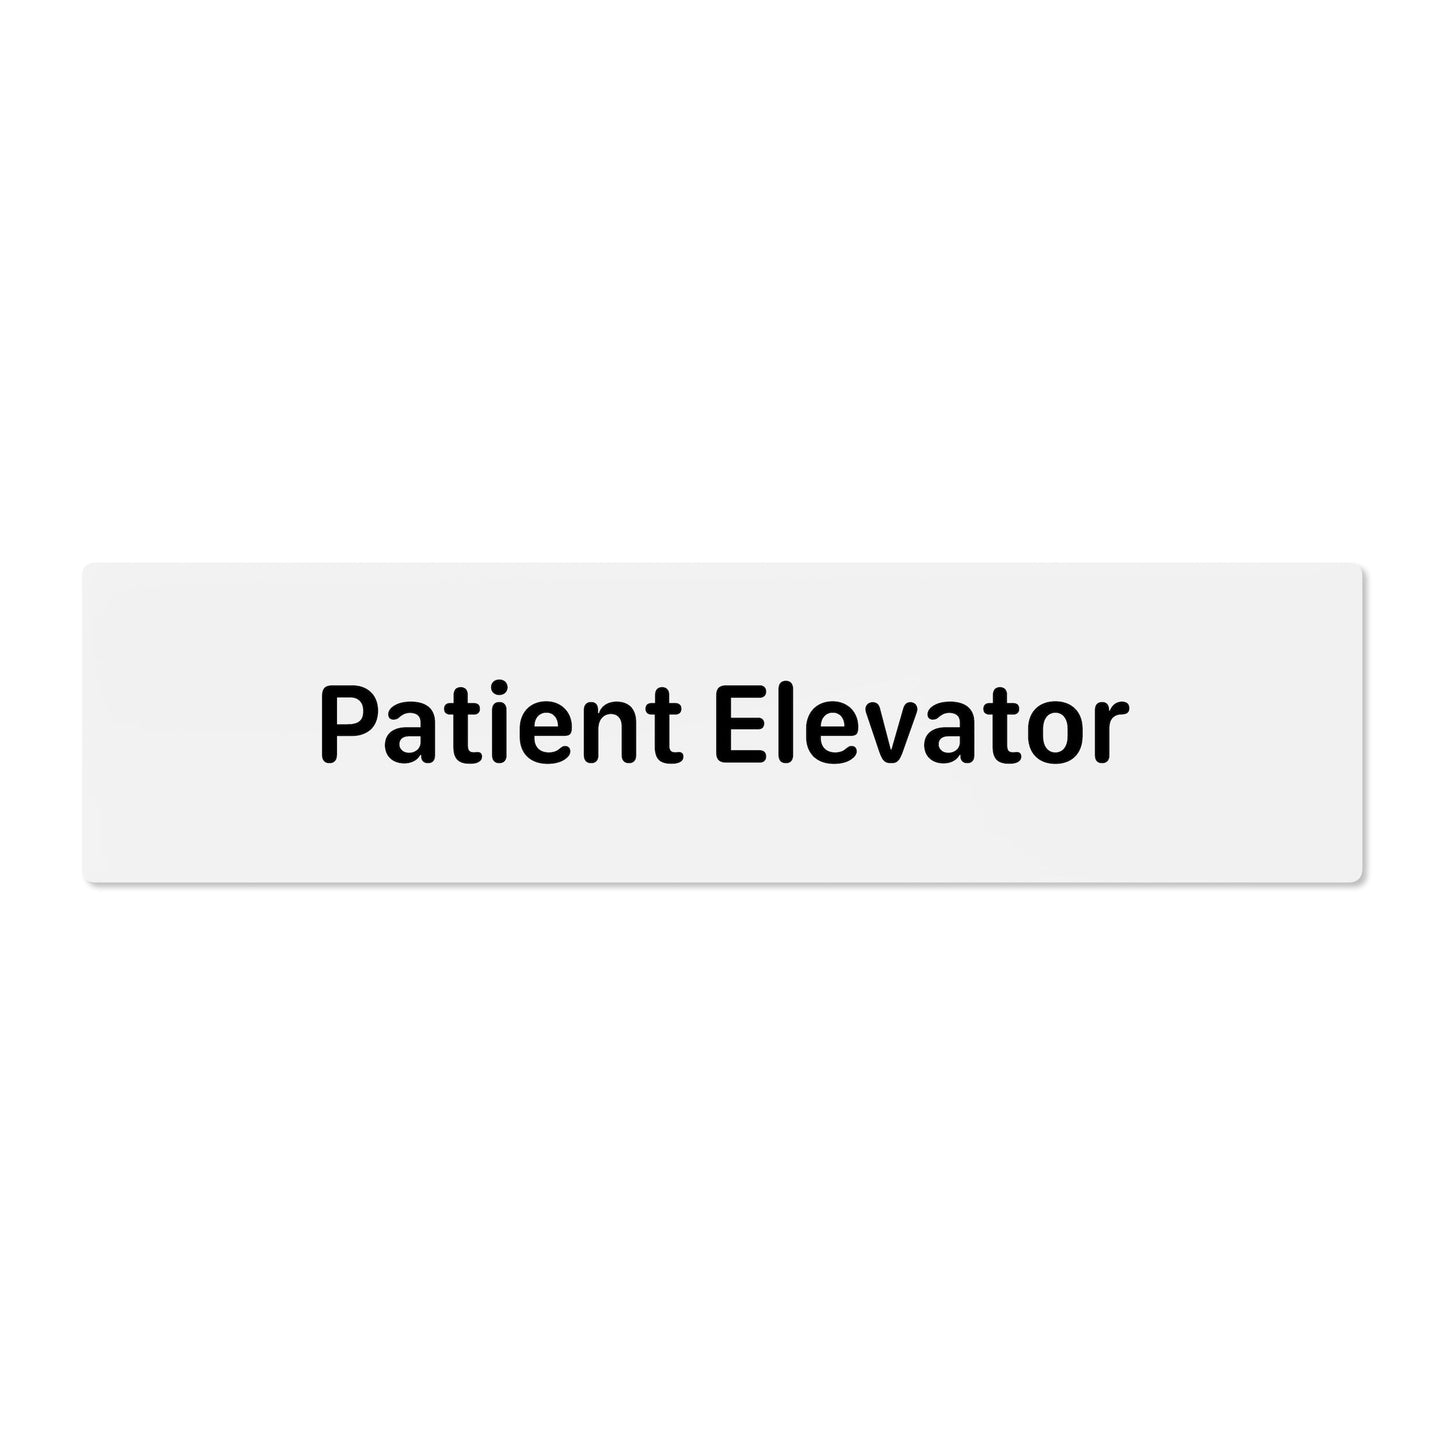 Patient Elevator